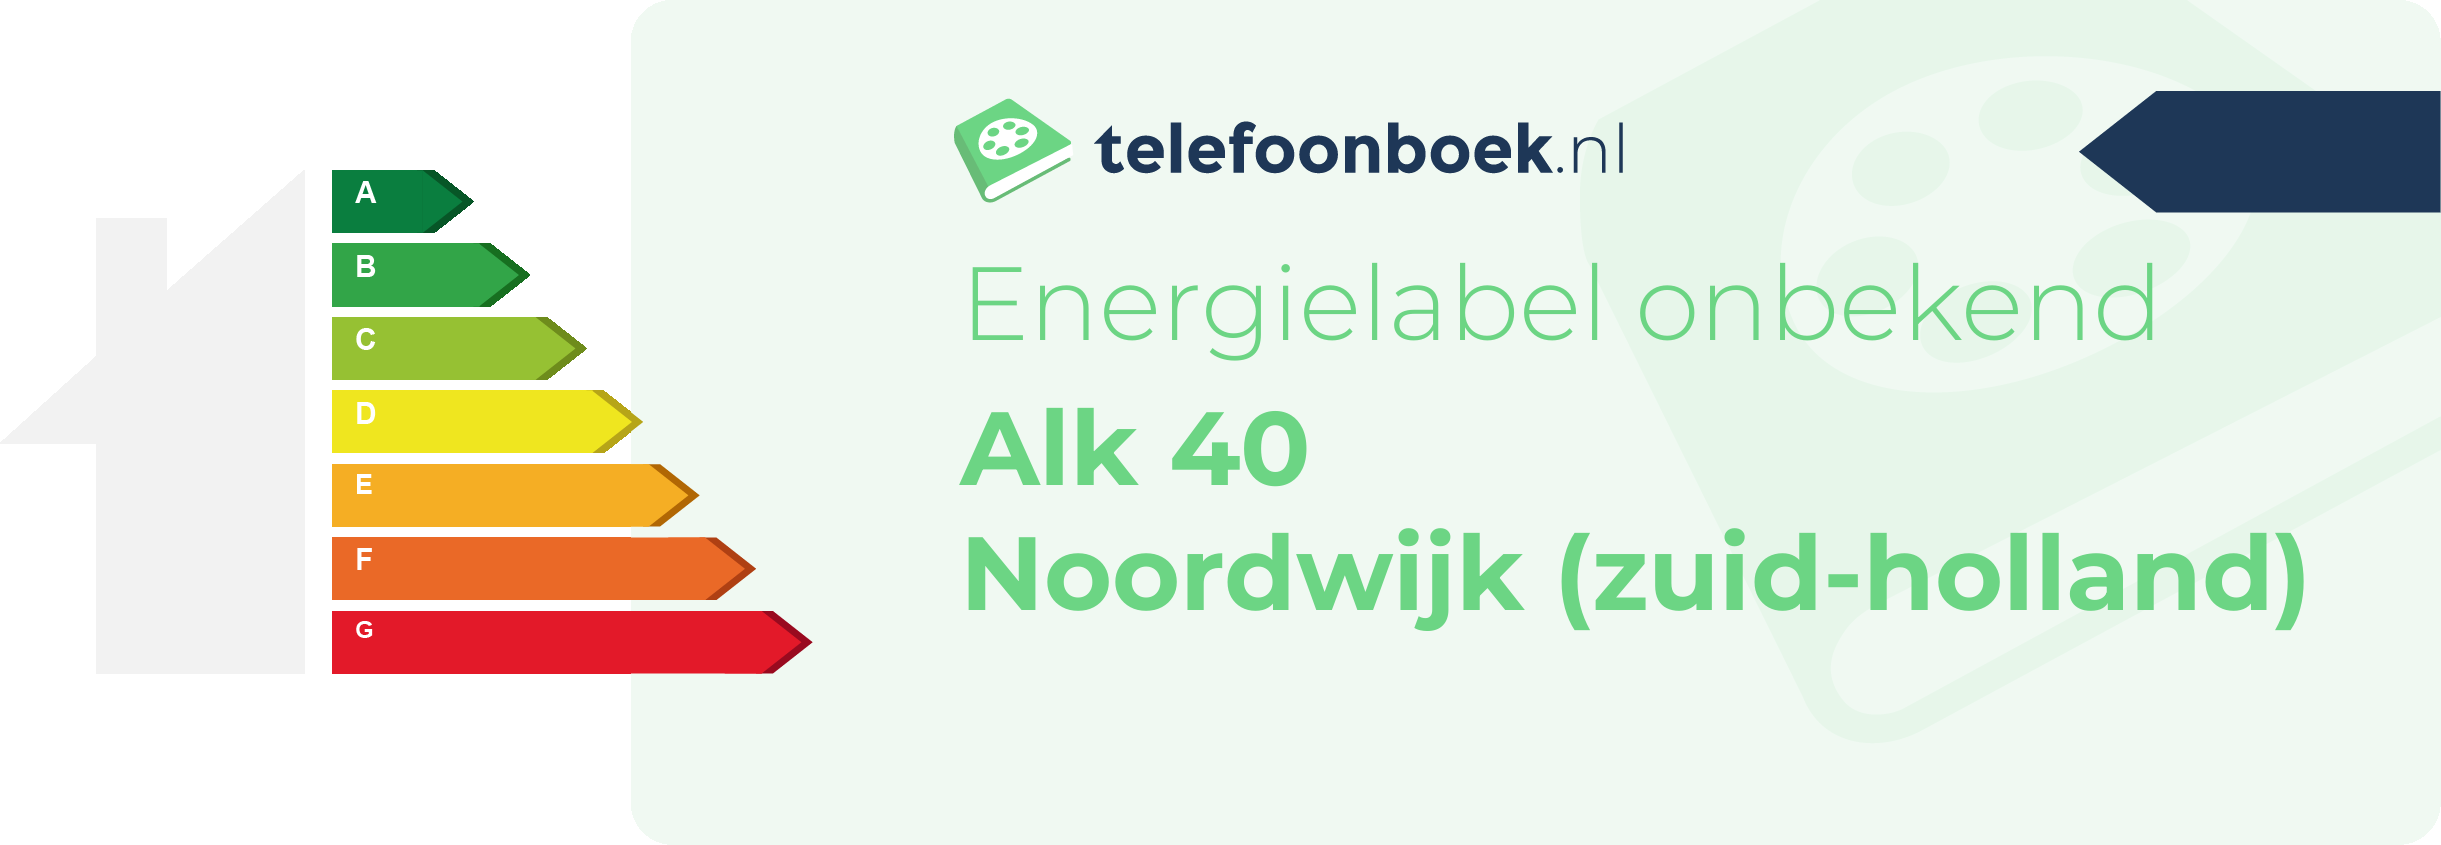 Energielabel Alk 40 Noordwijk (Zuid-Holland)